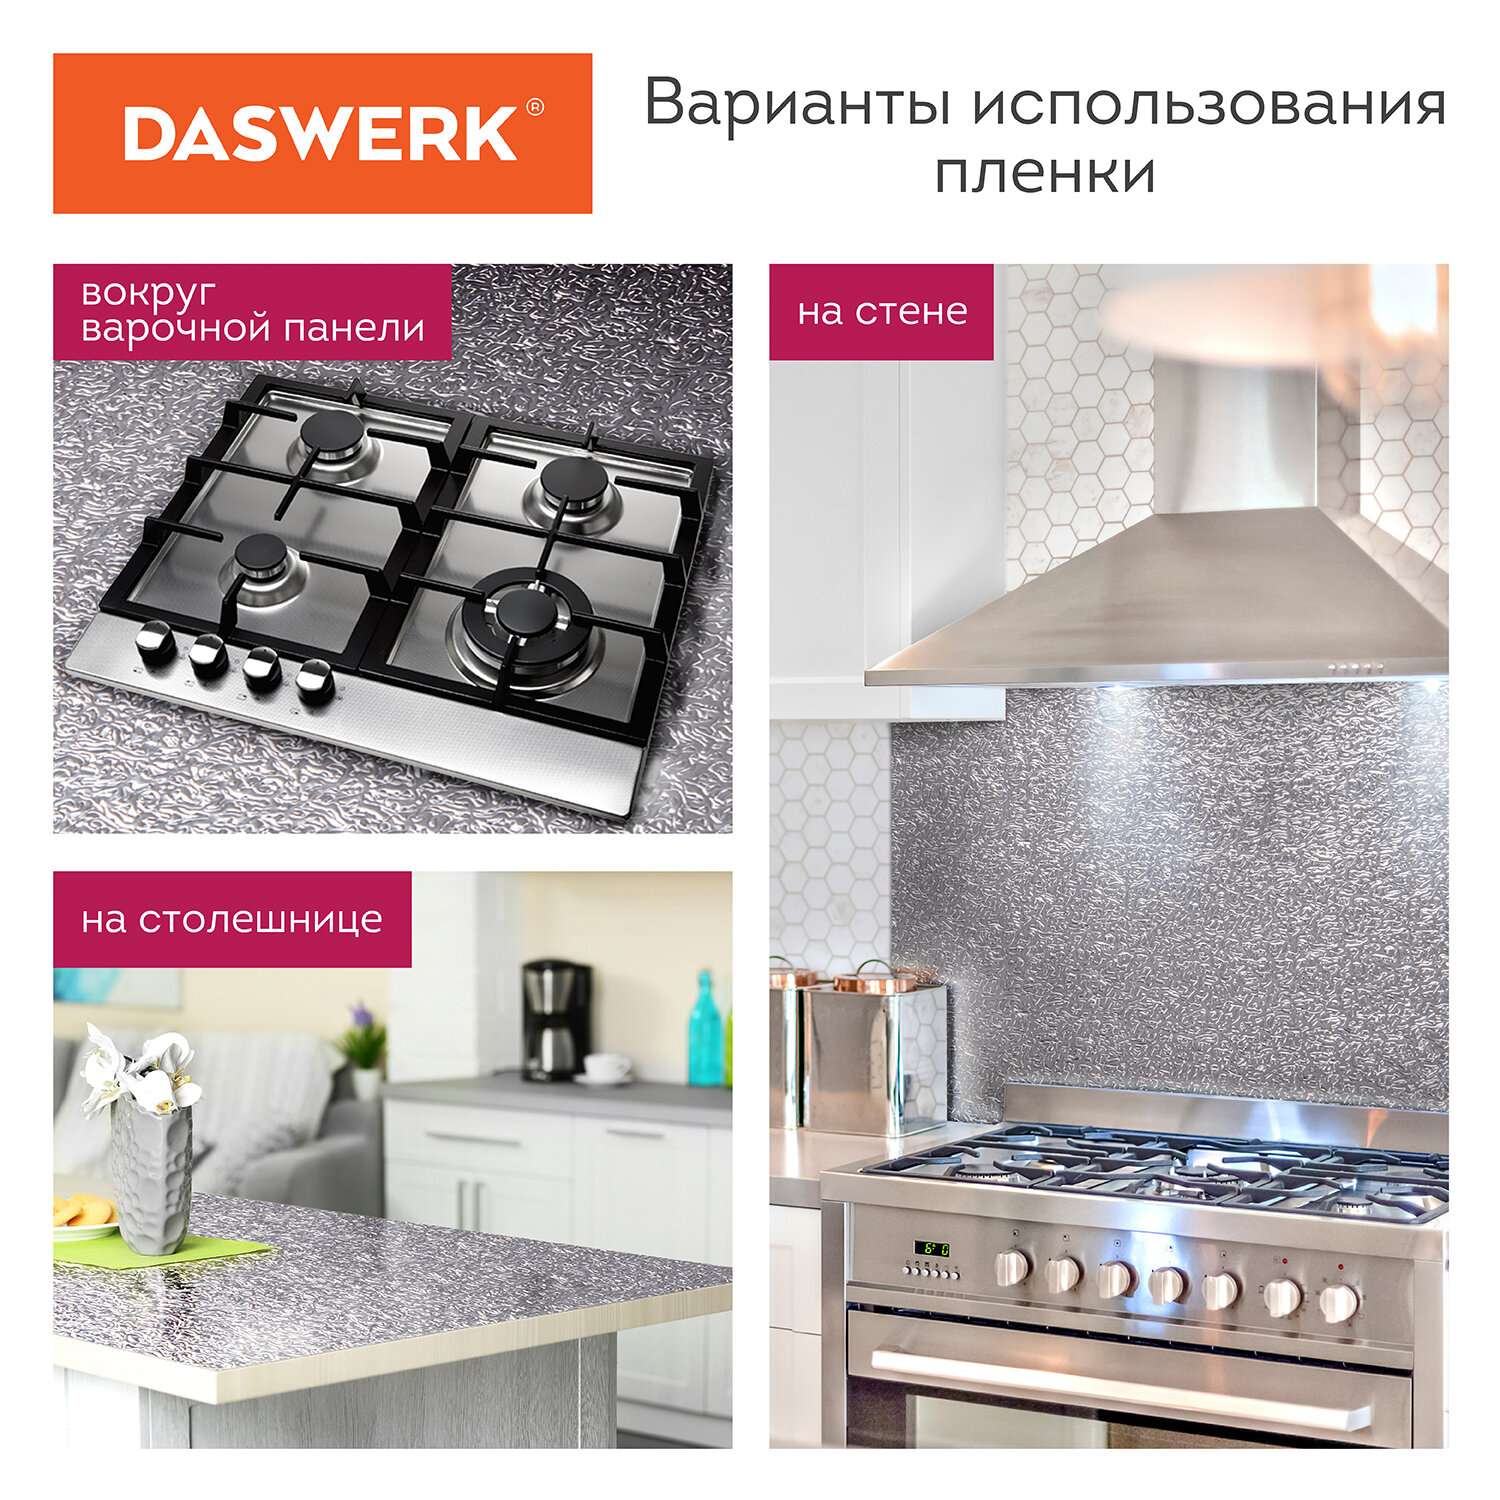 Пленка самоклеющаяся DASWERK алюминиевая фольга защитная для кухни и дома 0.6х3 м - фото 5